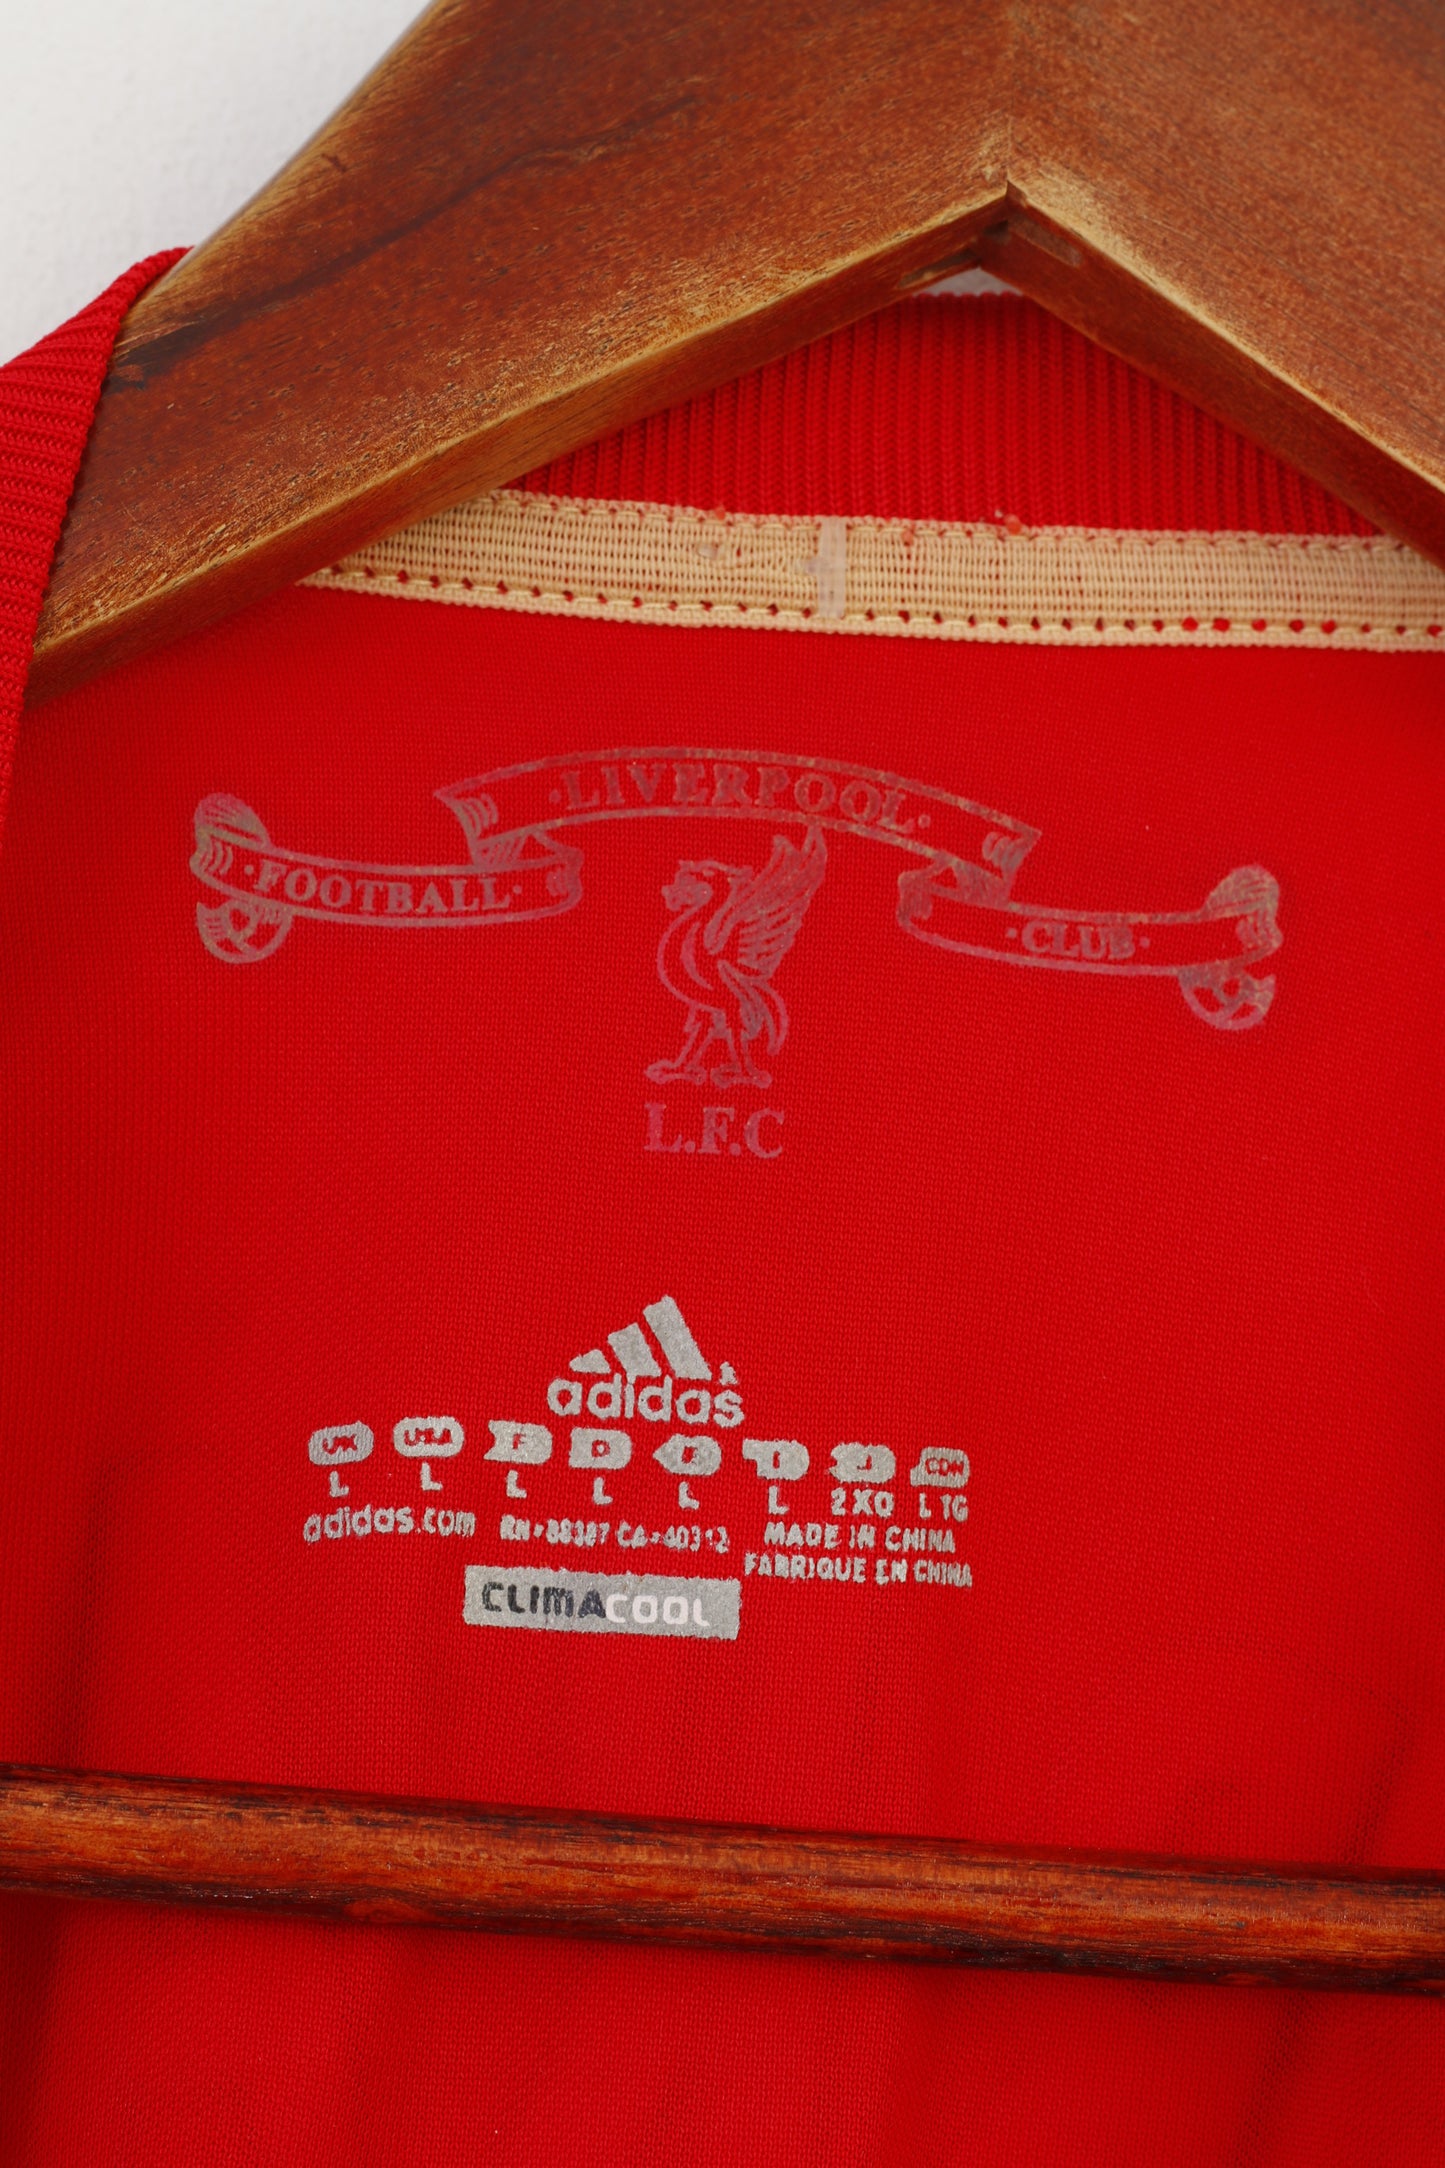 Adidas Maglia L da uomo Abbigliamento sportivo Allenamento Rosso Manica corta Sport Liverpool Football Club Est 1892 Top vintage